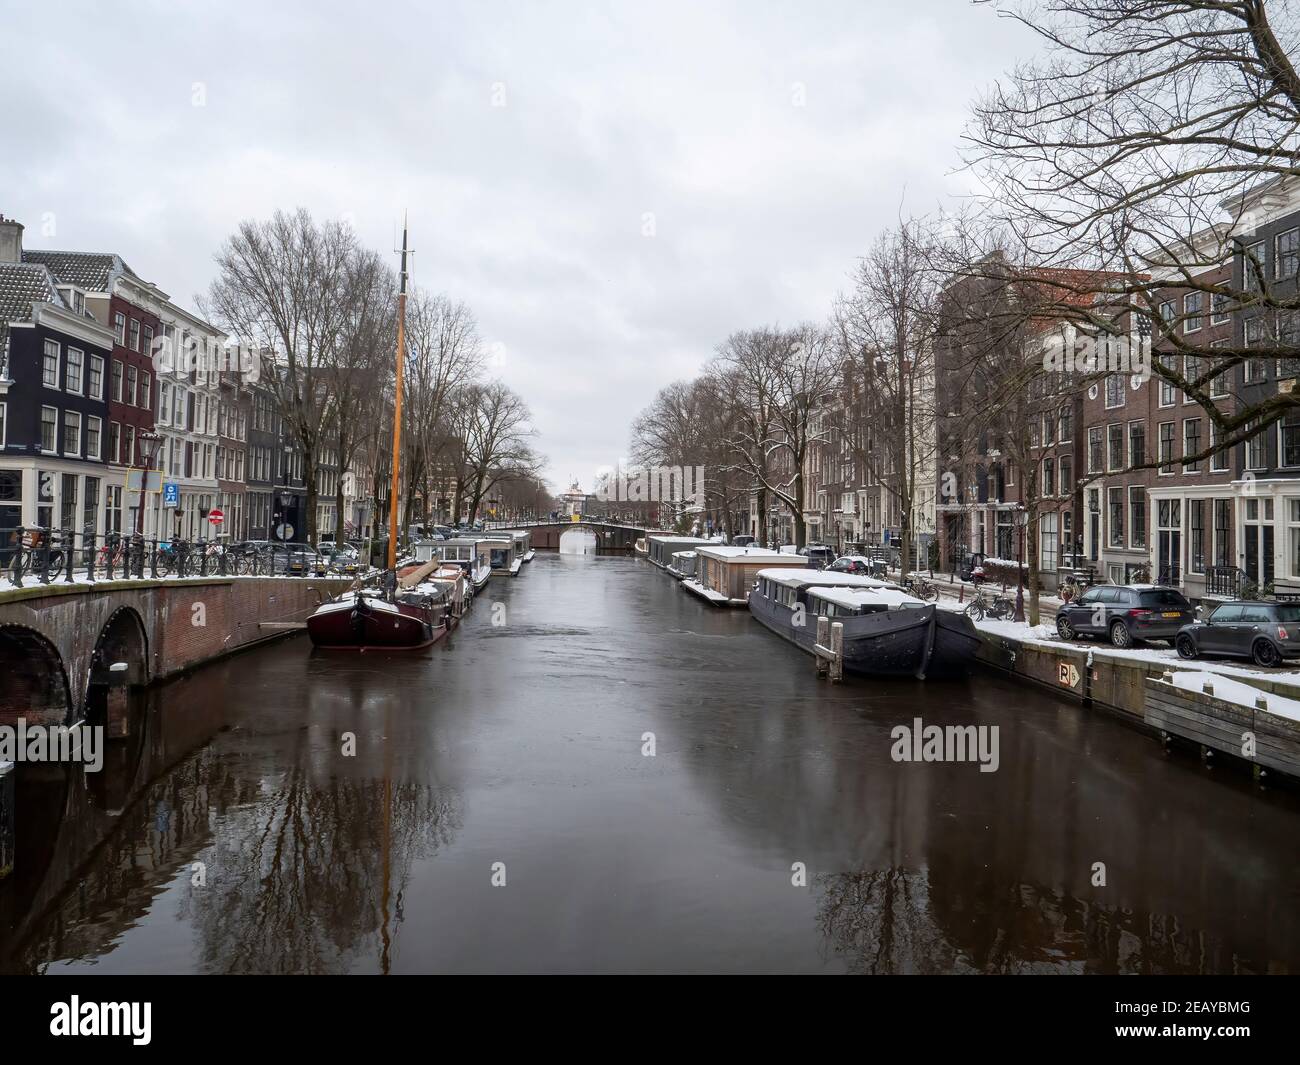 Brouwersgracht (Amsterdam ) en hiver, avec des bateaux et des maisons enneigés Banque D'Images